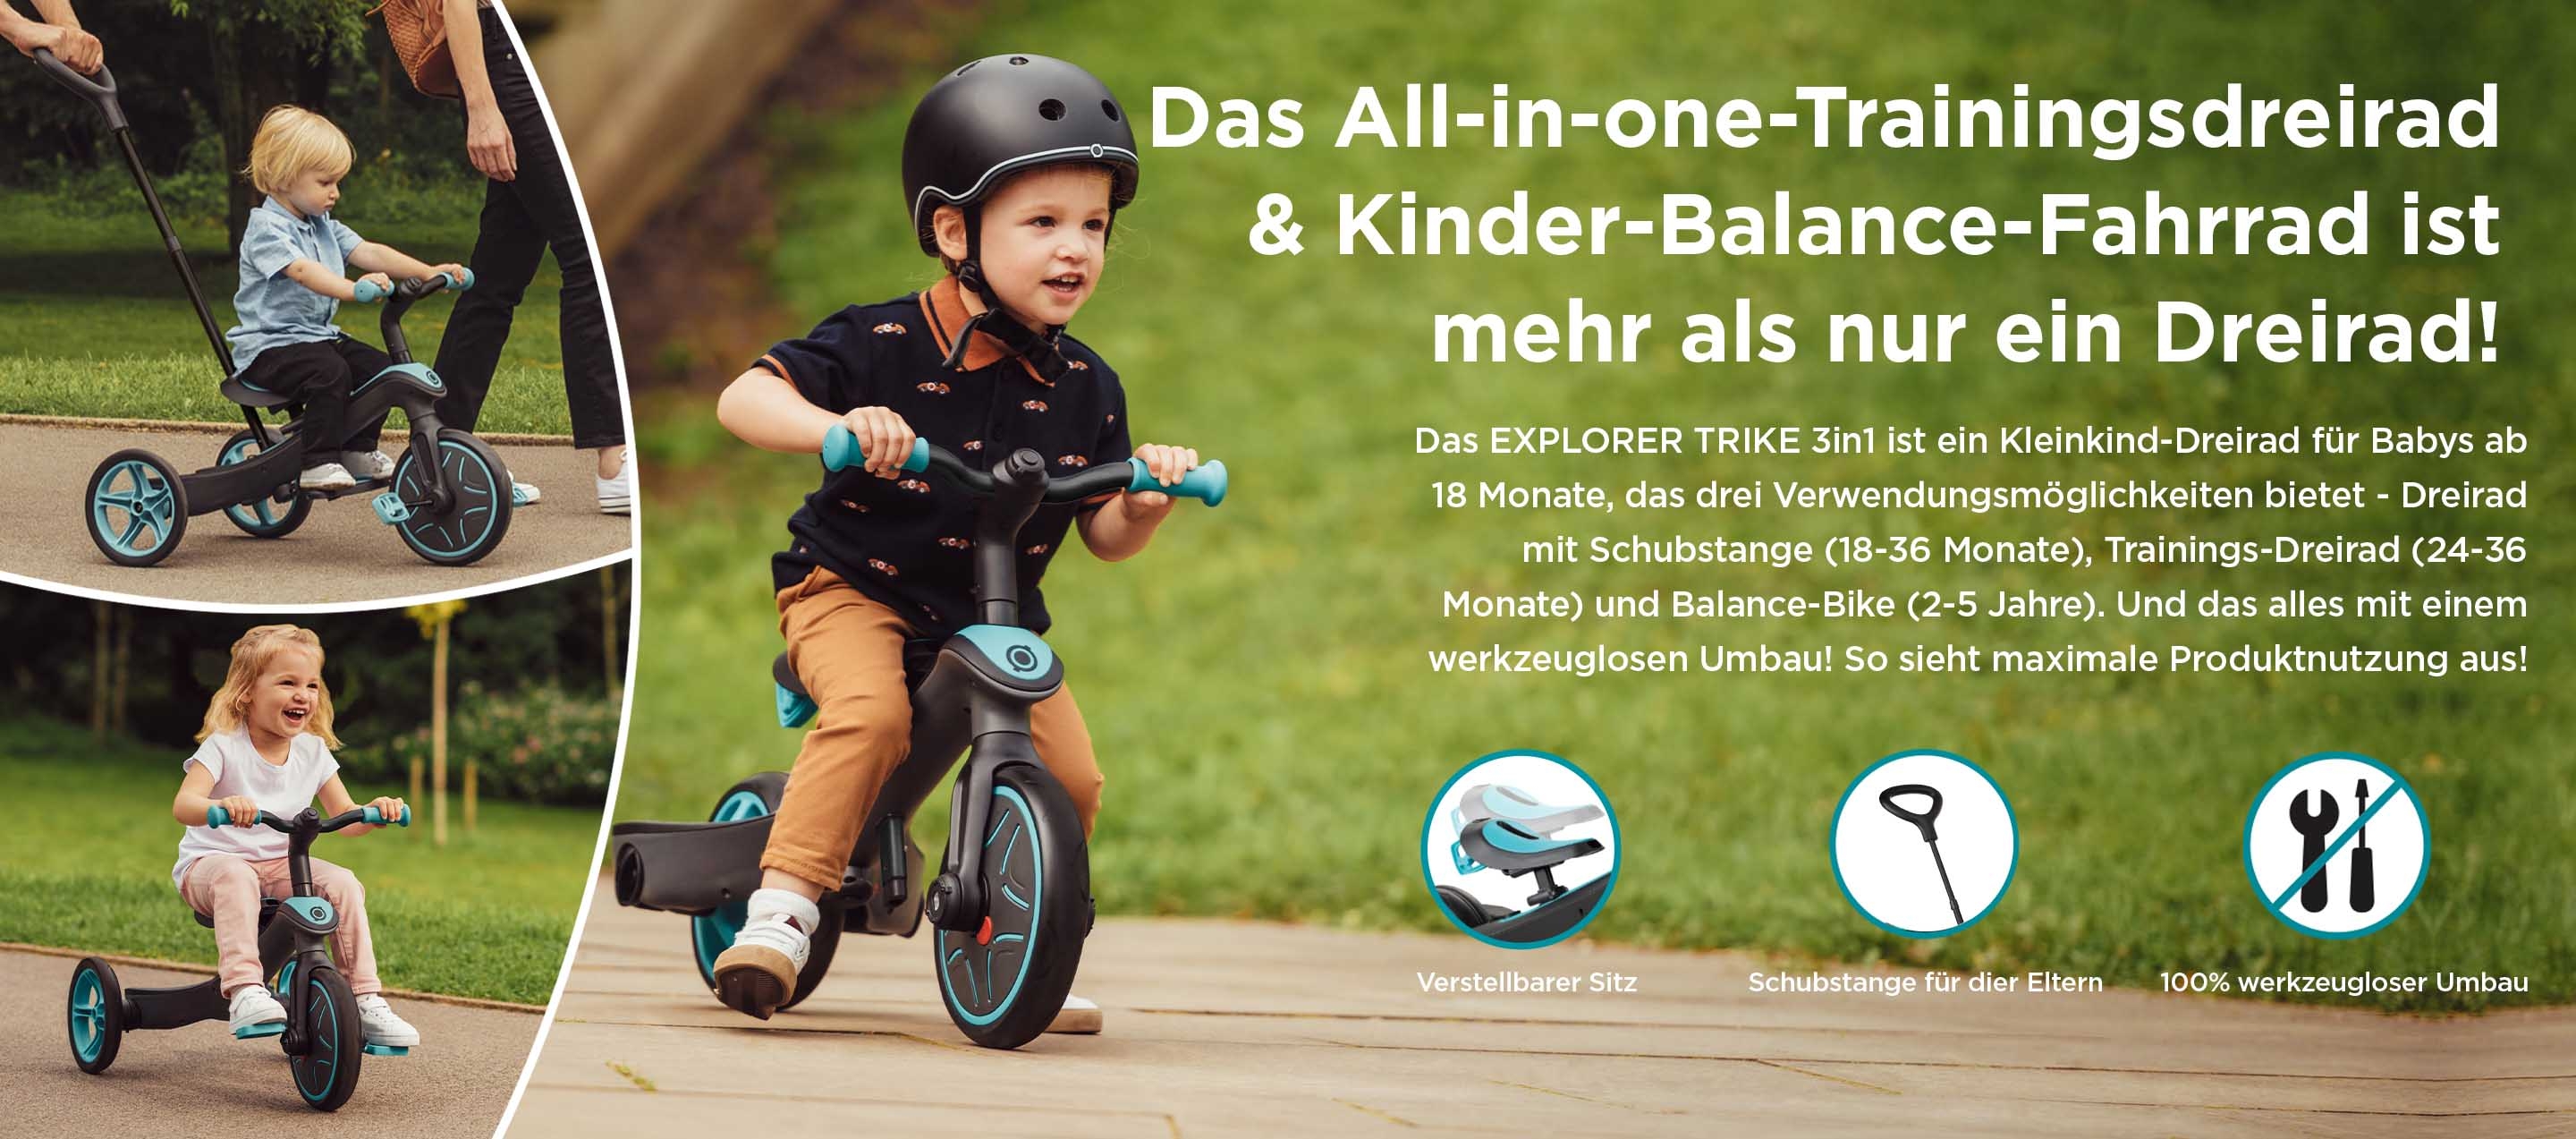 Das All-in-one-Trainingsdreirad & Kinder-Balance-Fahrrad ist mehr als nur ein Dreirad! Das EXPLORER TRIKE 3in1 ist ein Kleinkind-Dreirad für Babys ab 18 Monate, das drei Verwendungsmöglichkeiten bietet - Dreirad mit Schubstange (18-36 Monate), Trainings-Dreirad (24-36 Monate) und Balance-Bike (2-5 Jahre). Und das alles mit einem werkzeuglosen Umbau! So sieht maximale Produktnutzung aus! 